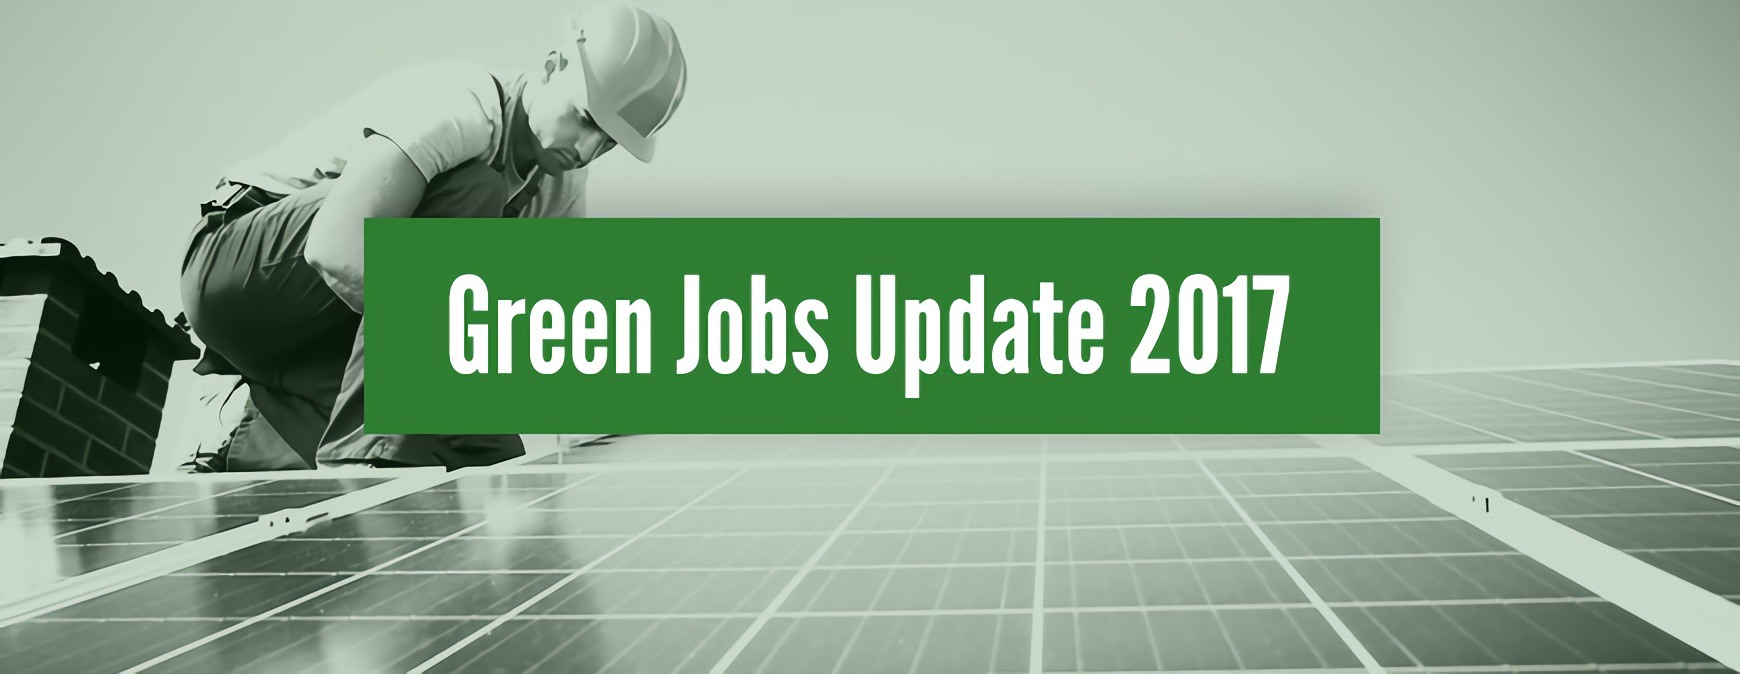 green jobs update 2017